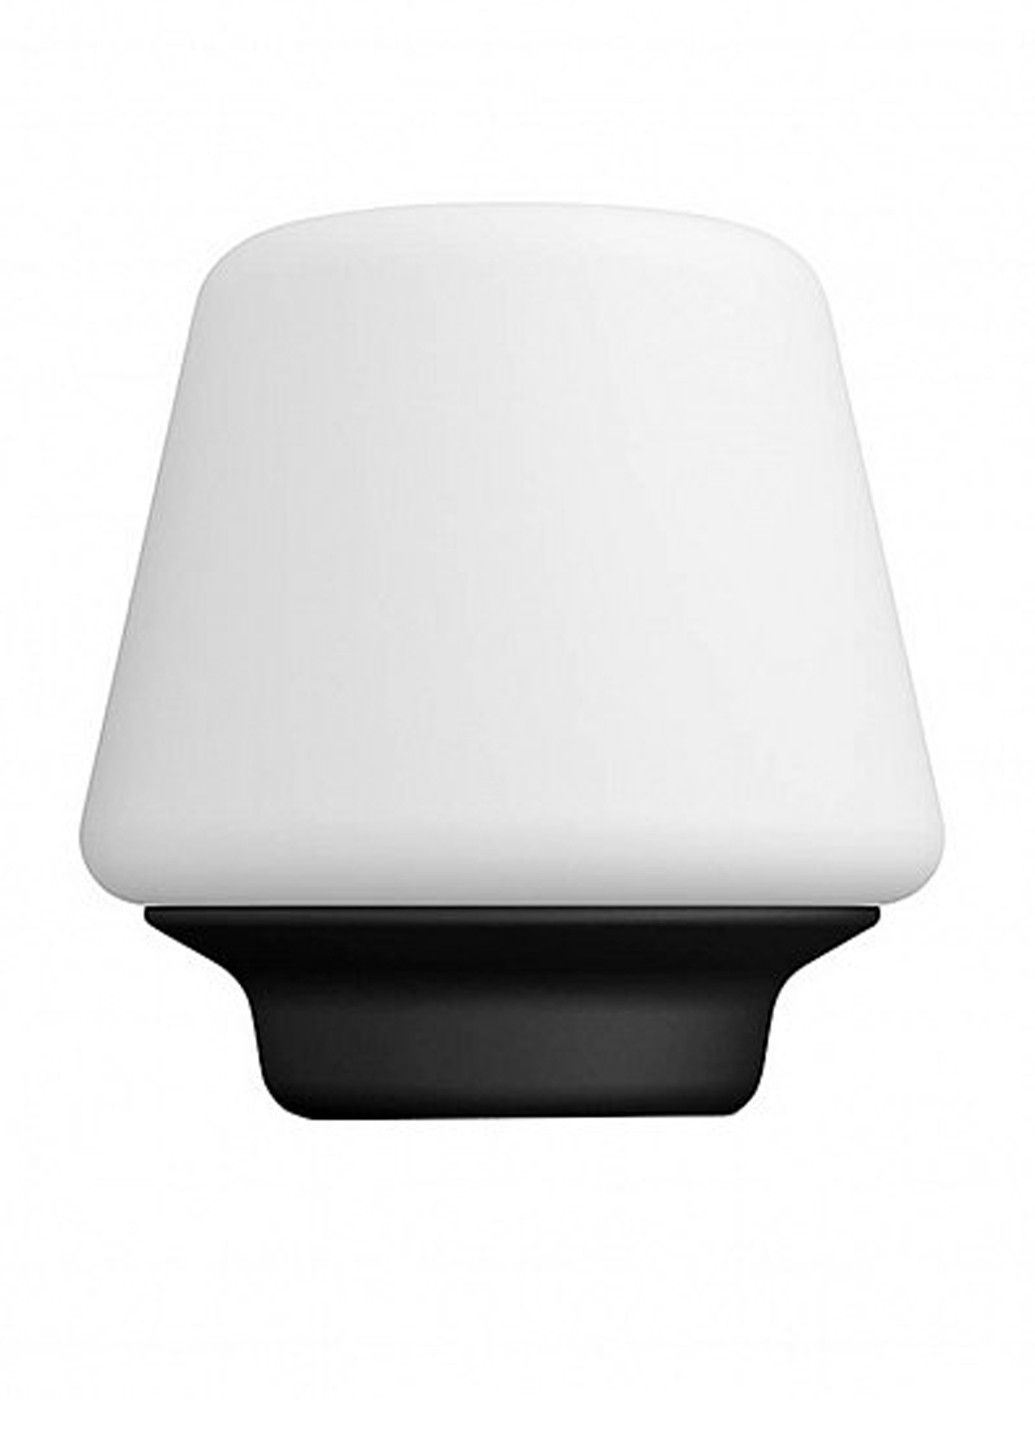 Настільна лампа Wellness Hue table lamp black 1x9.5W (40801/30 / P7) Philips настольная wellness hue table lamp black 1x9.5w (40801/30/p7) (142289721)